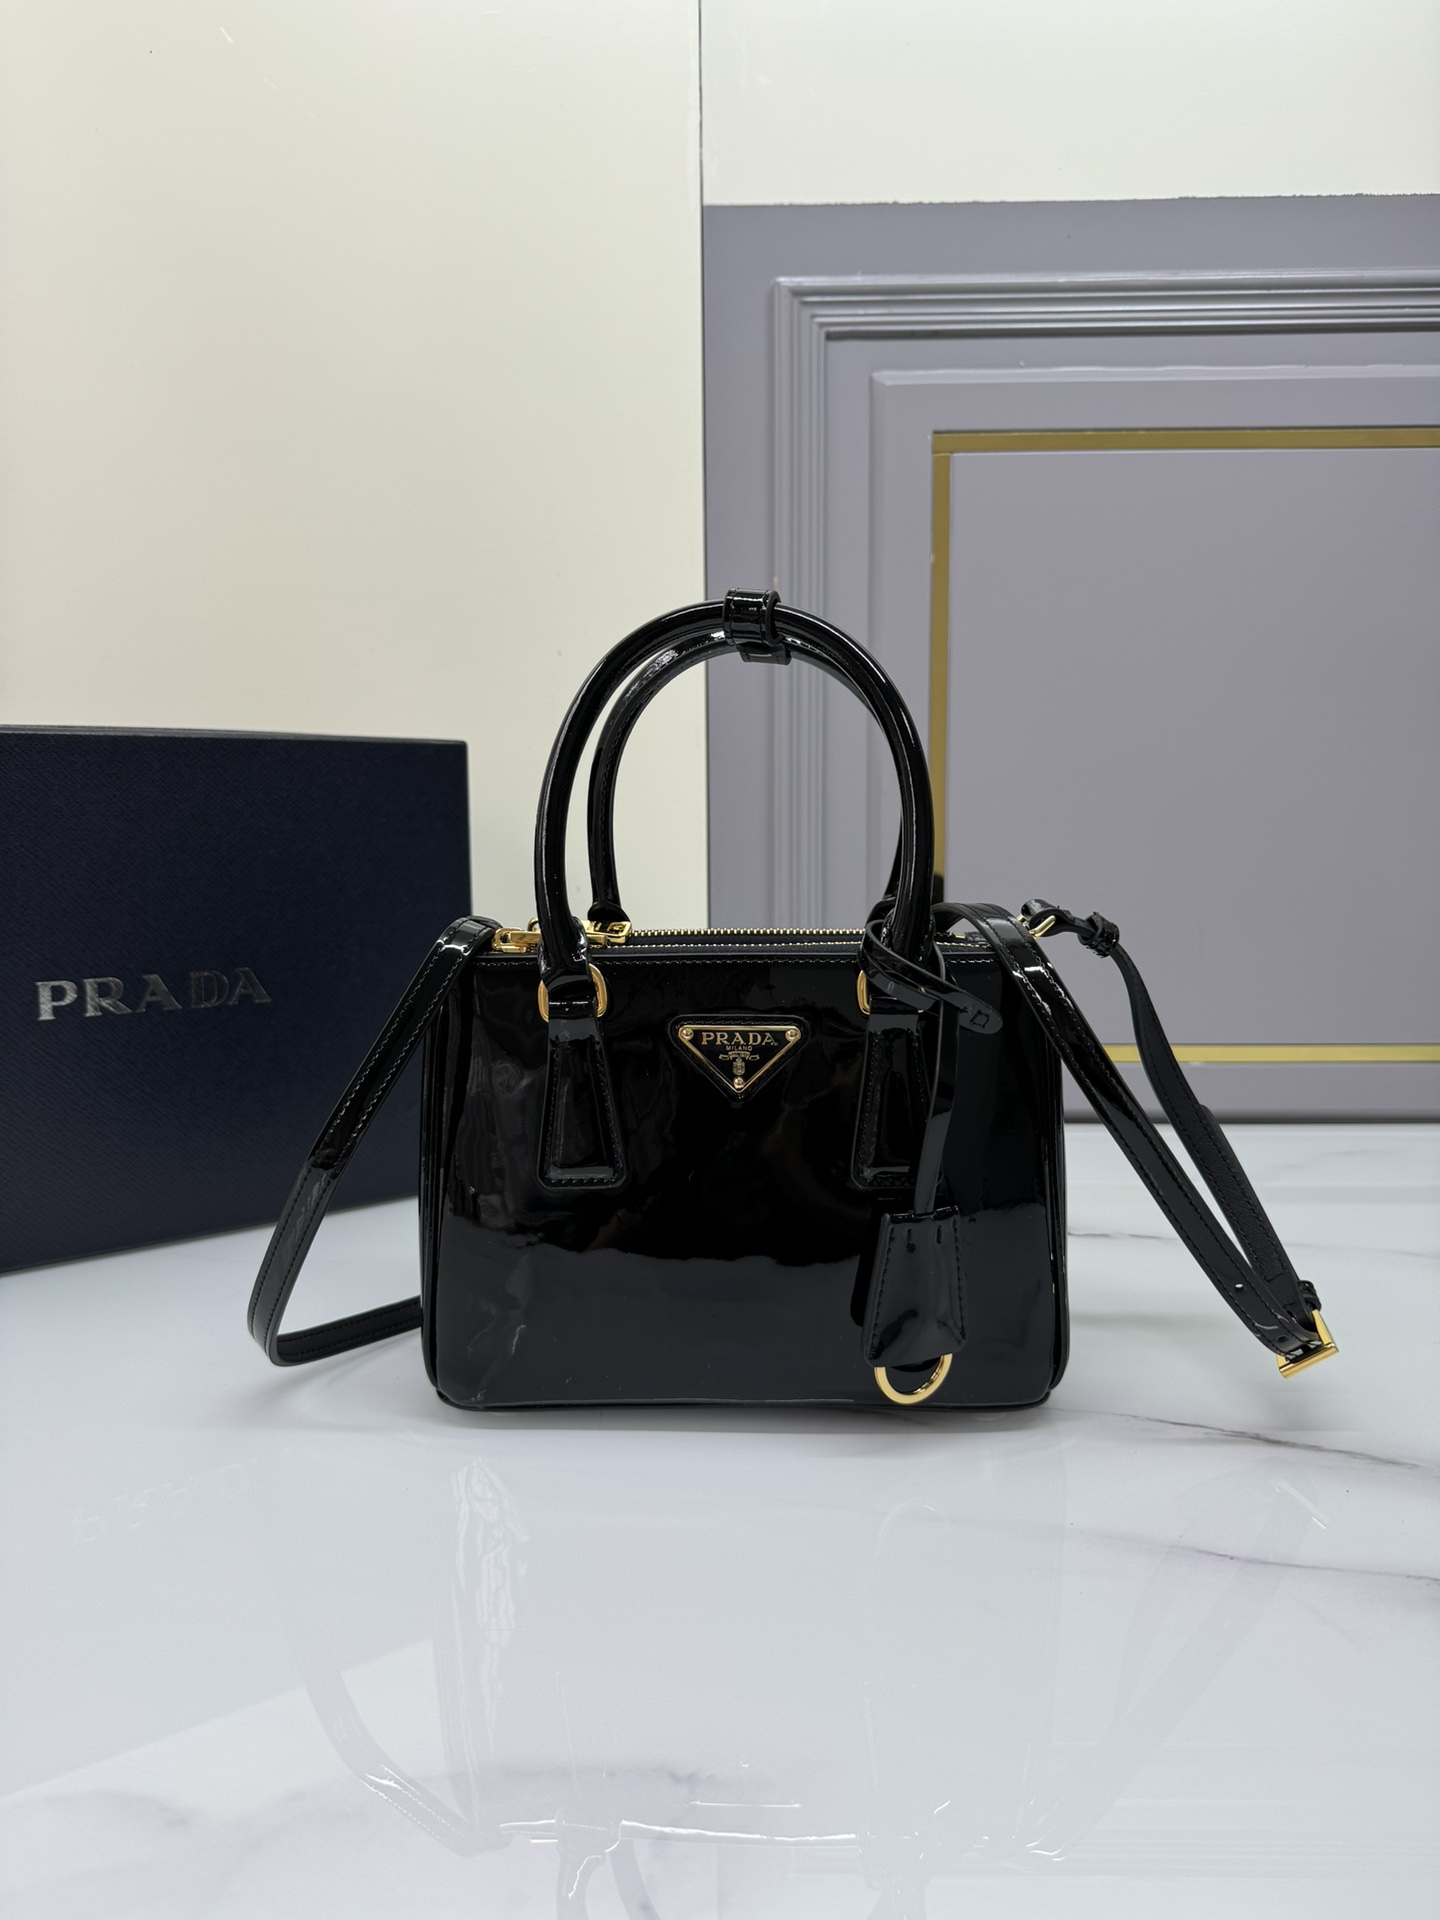 Prada Galleria Handbags Clutches & Pouch Bags Gold Patent Leather Saffiano Mini